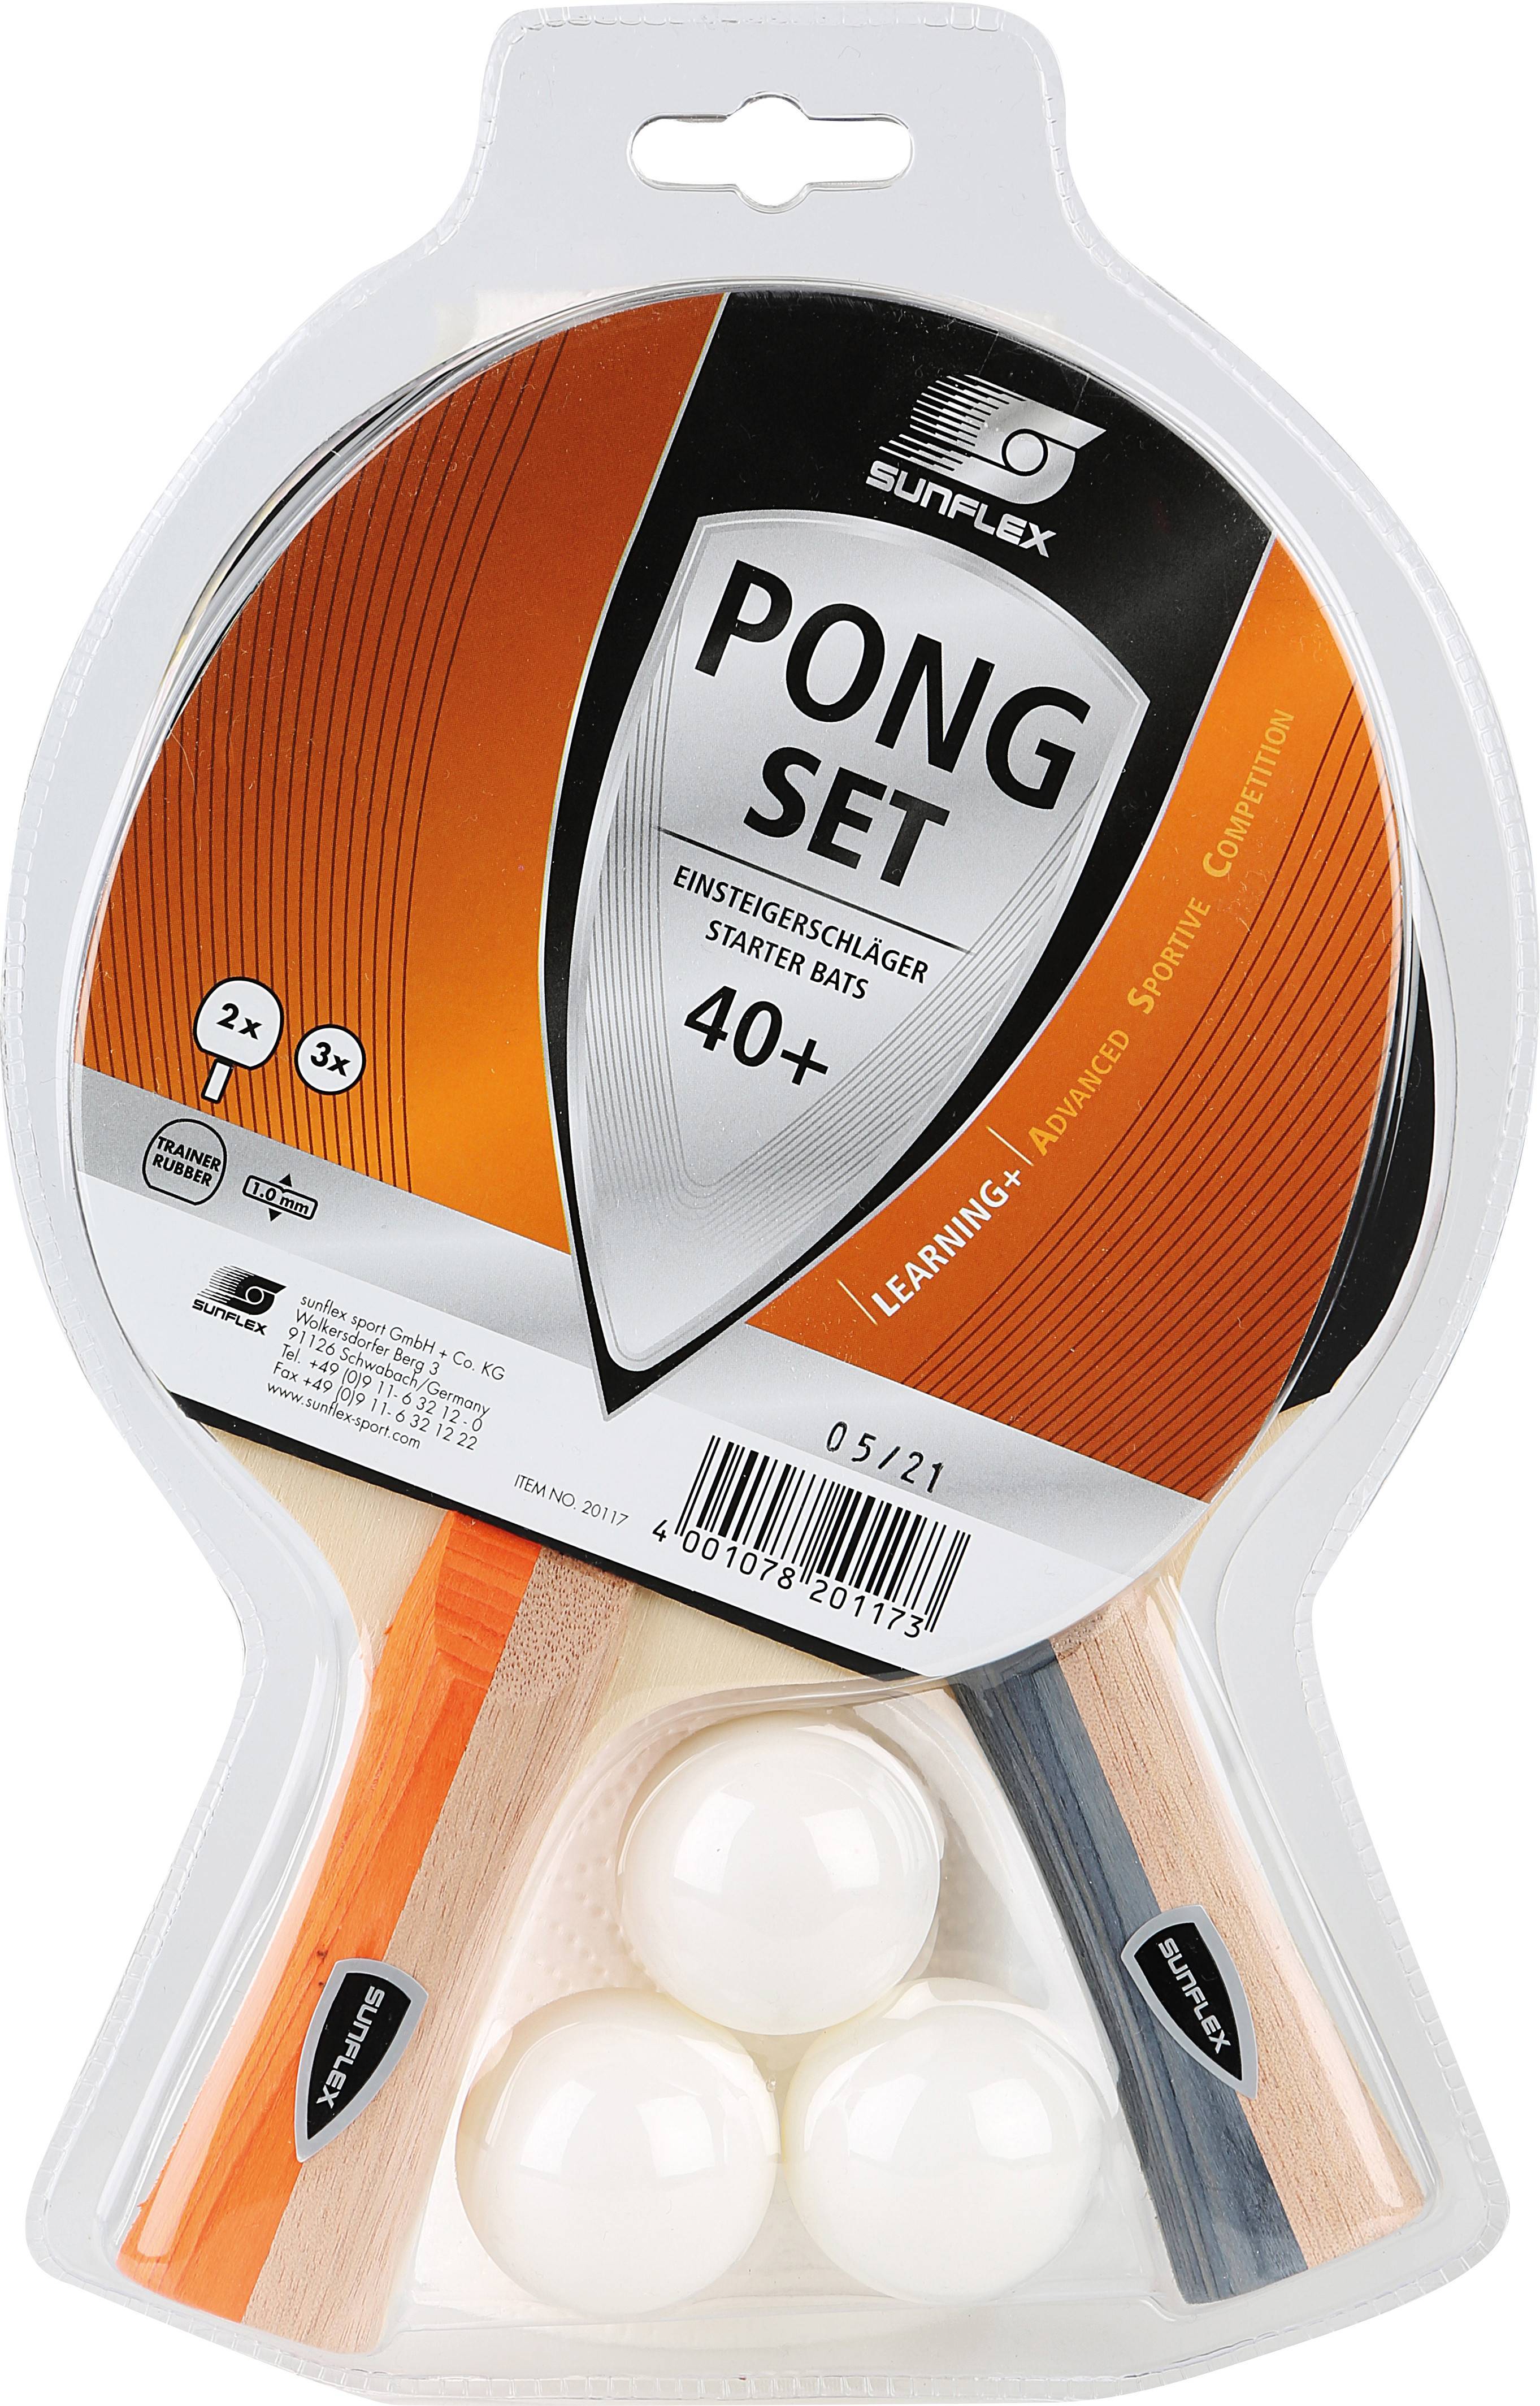 Σετ Ping Pong Sunflex (2 ρακέτες + 3 μπαλάκια)